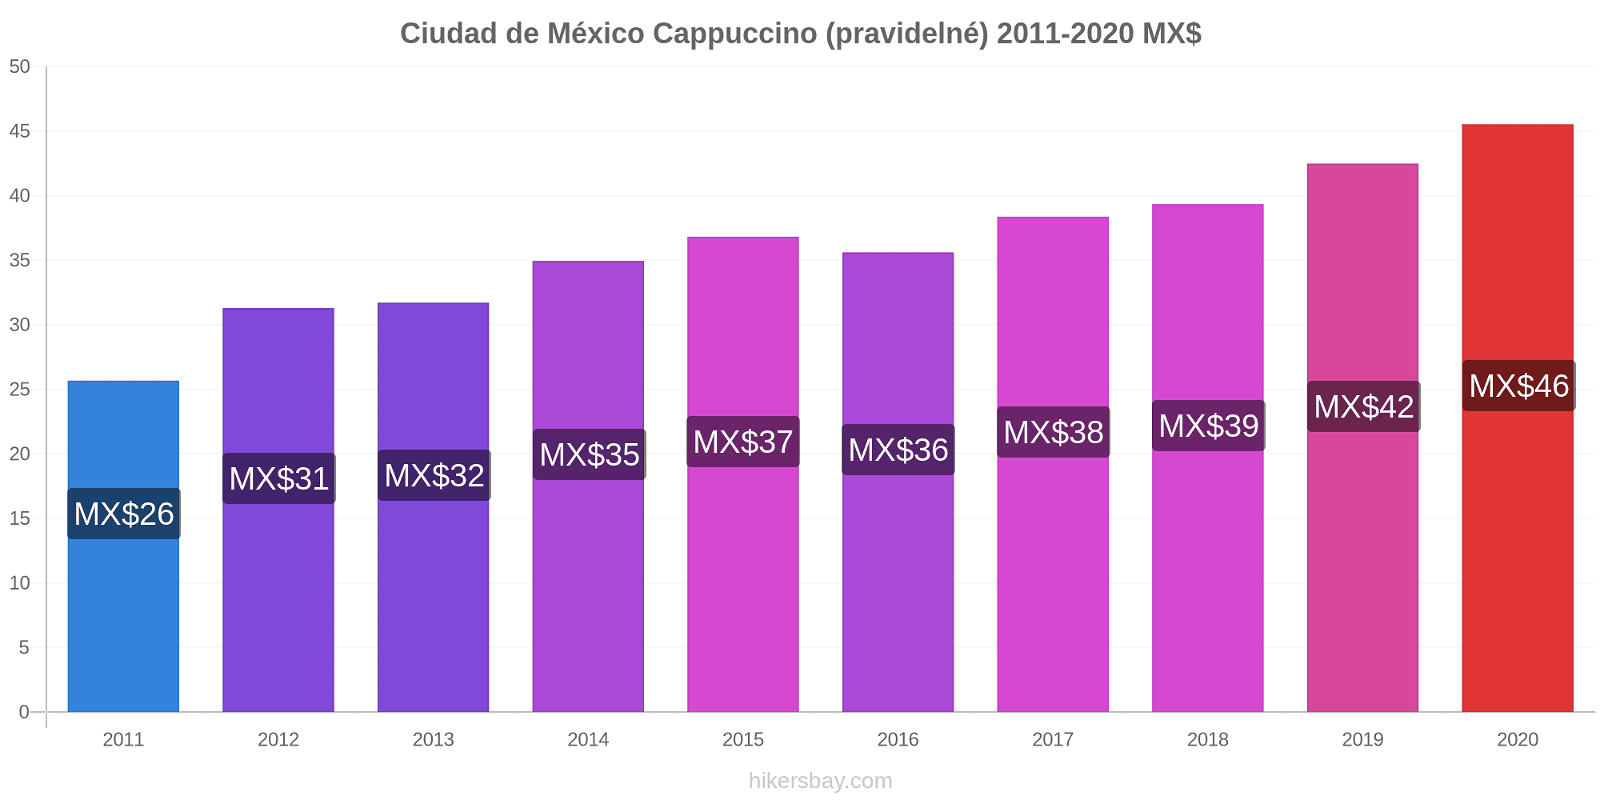 Ciudad de México změny cen Cappuccino (pravidelné) hikersbay.com